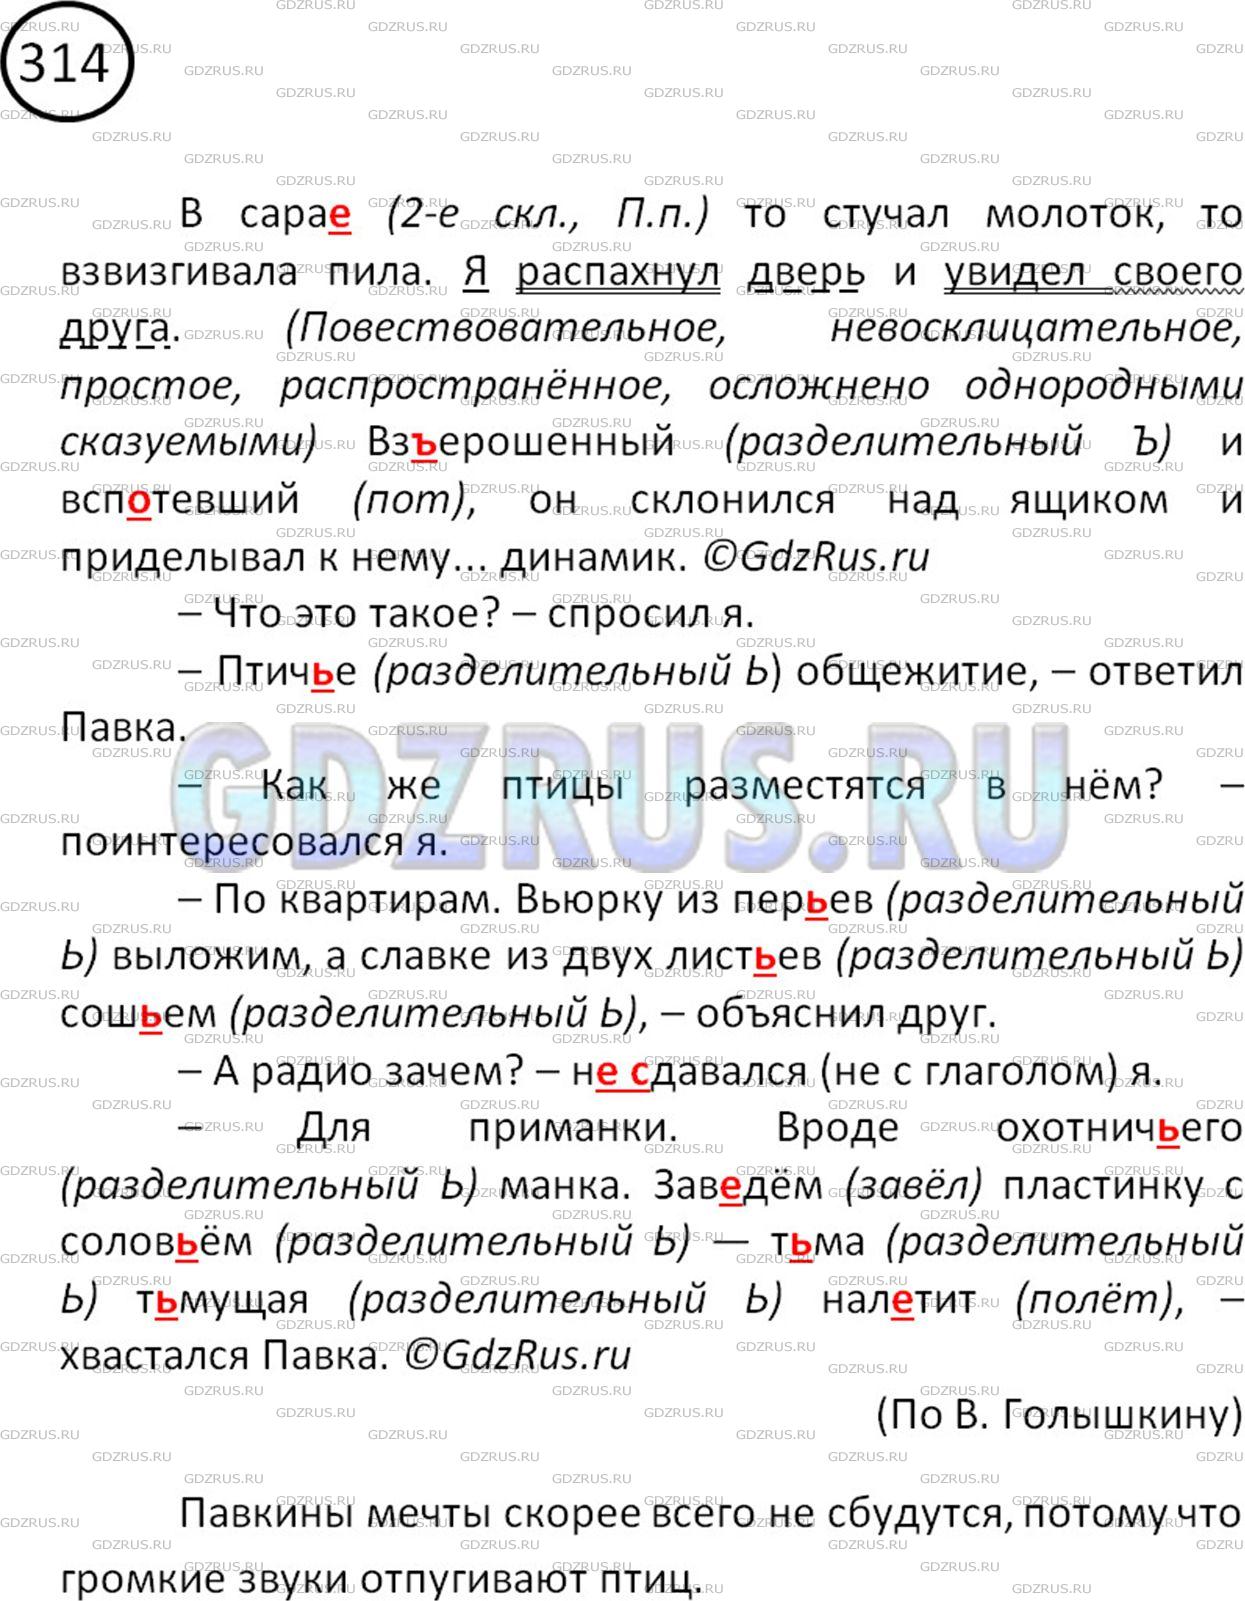 Фото решения 2: Номер №325 из ГДЗ по Русскому языку 5 класс: Ладыженская Т.А. 2019г.